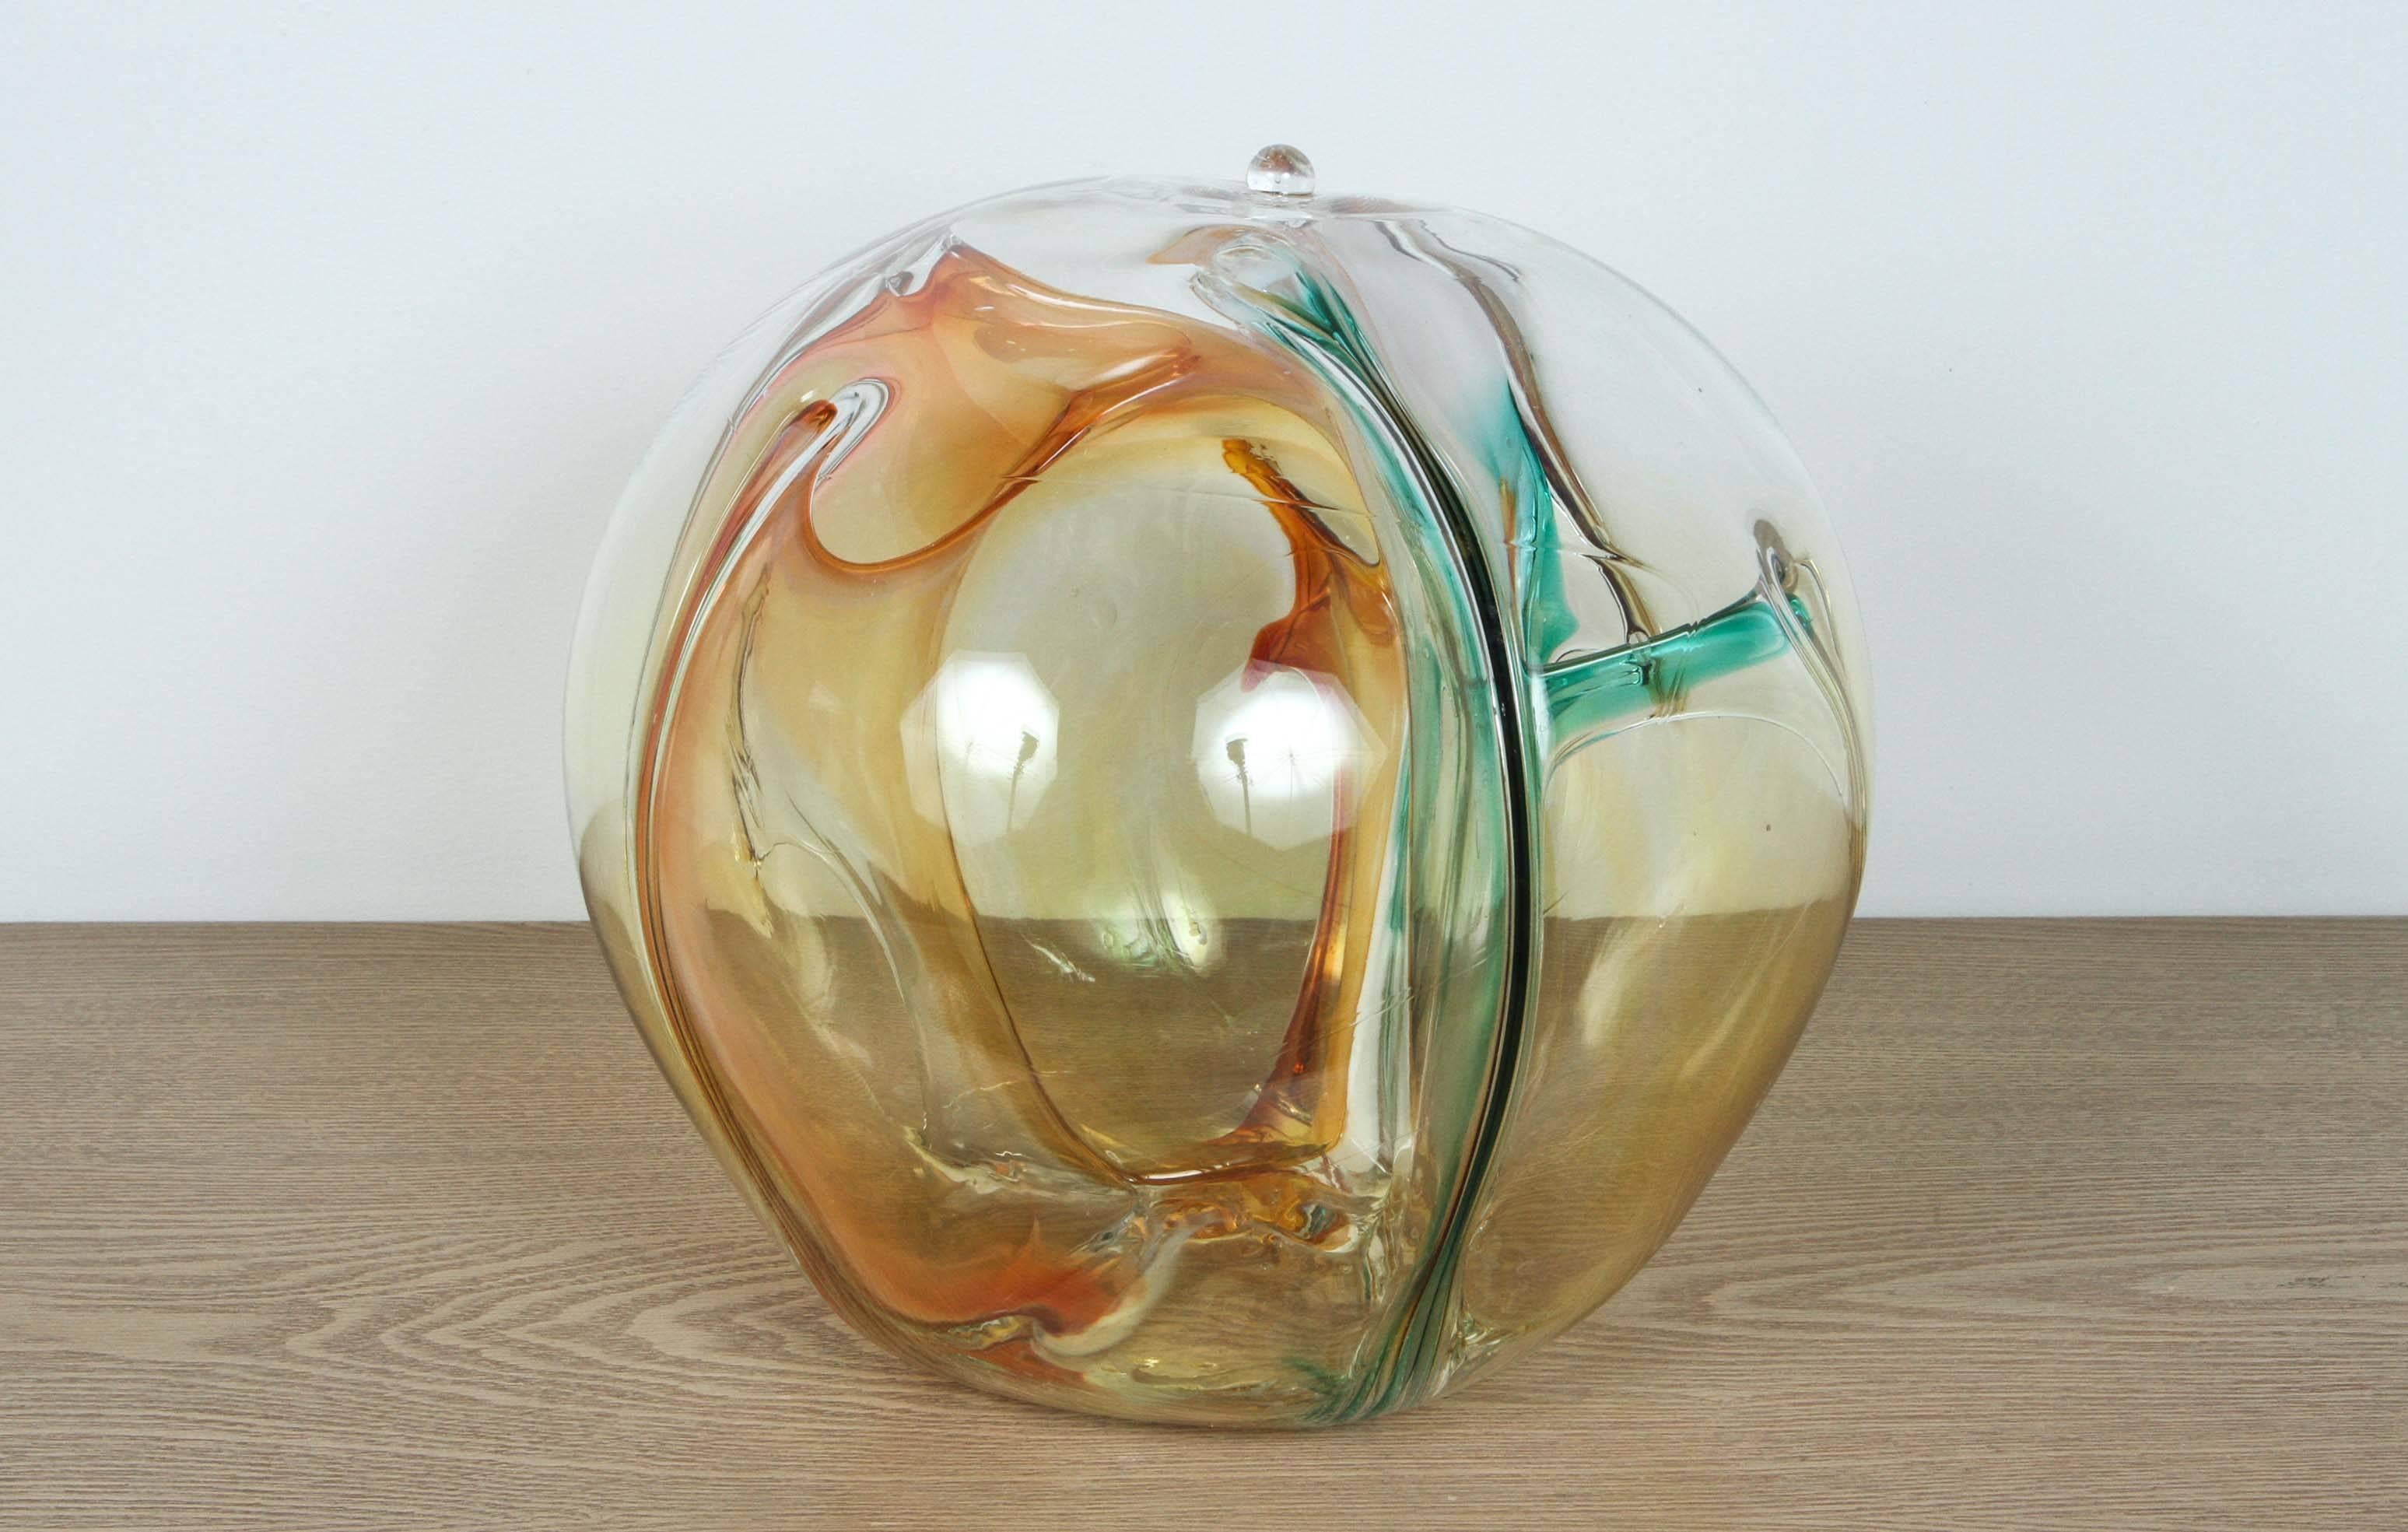 American Handblown Glass Sculpture by Peter Bramhall